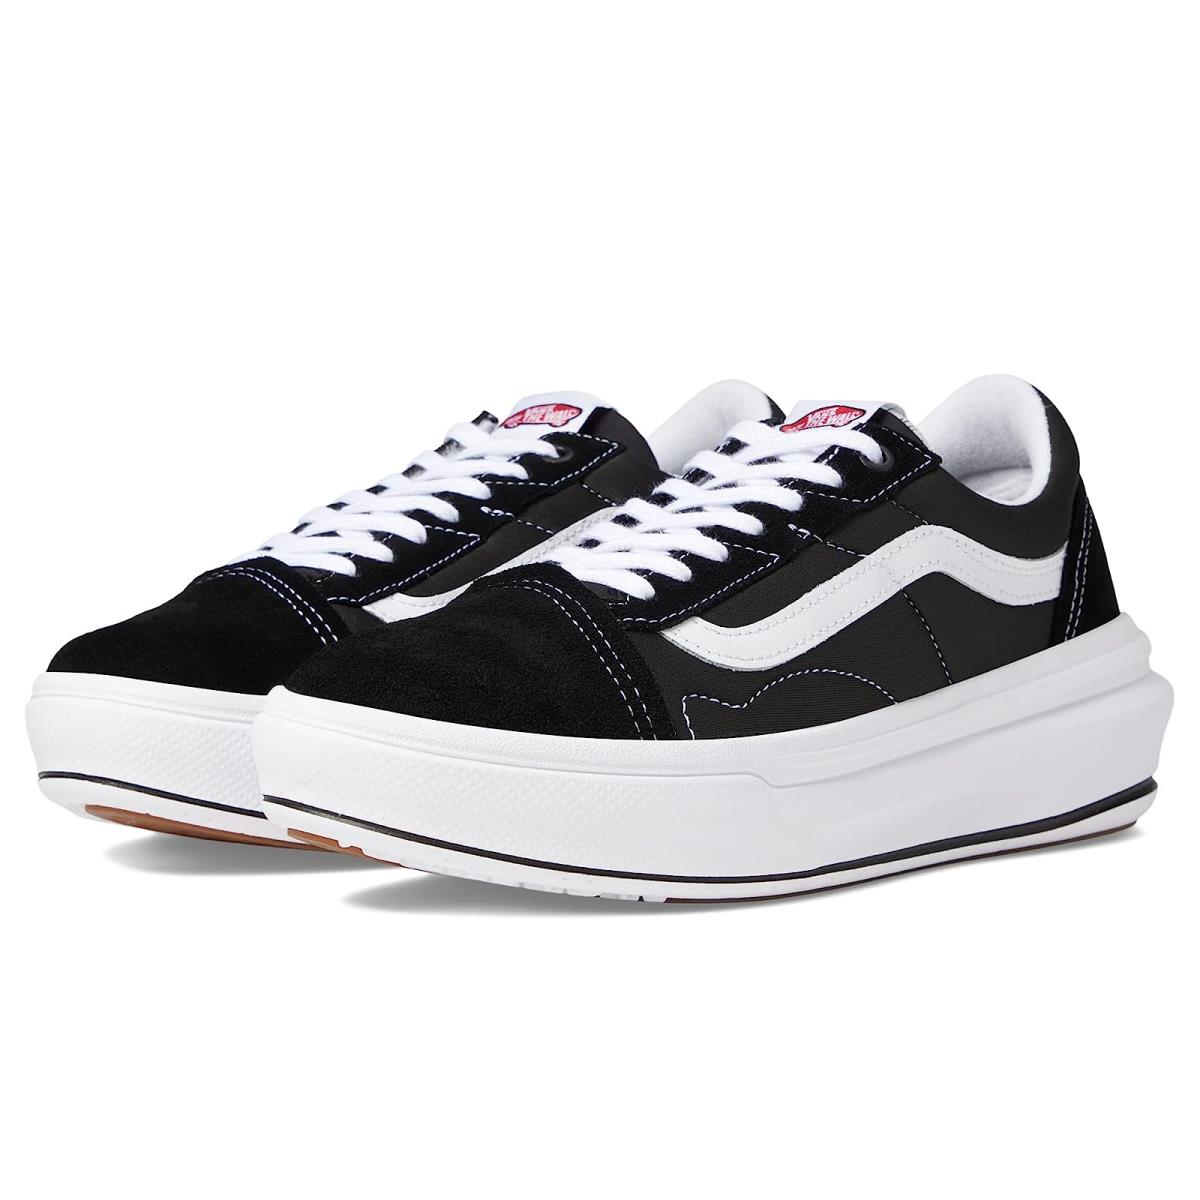 Unisex Sneakers Athletic Shoes Vans Old Skool Overt CC Black/White